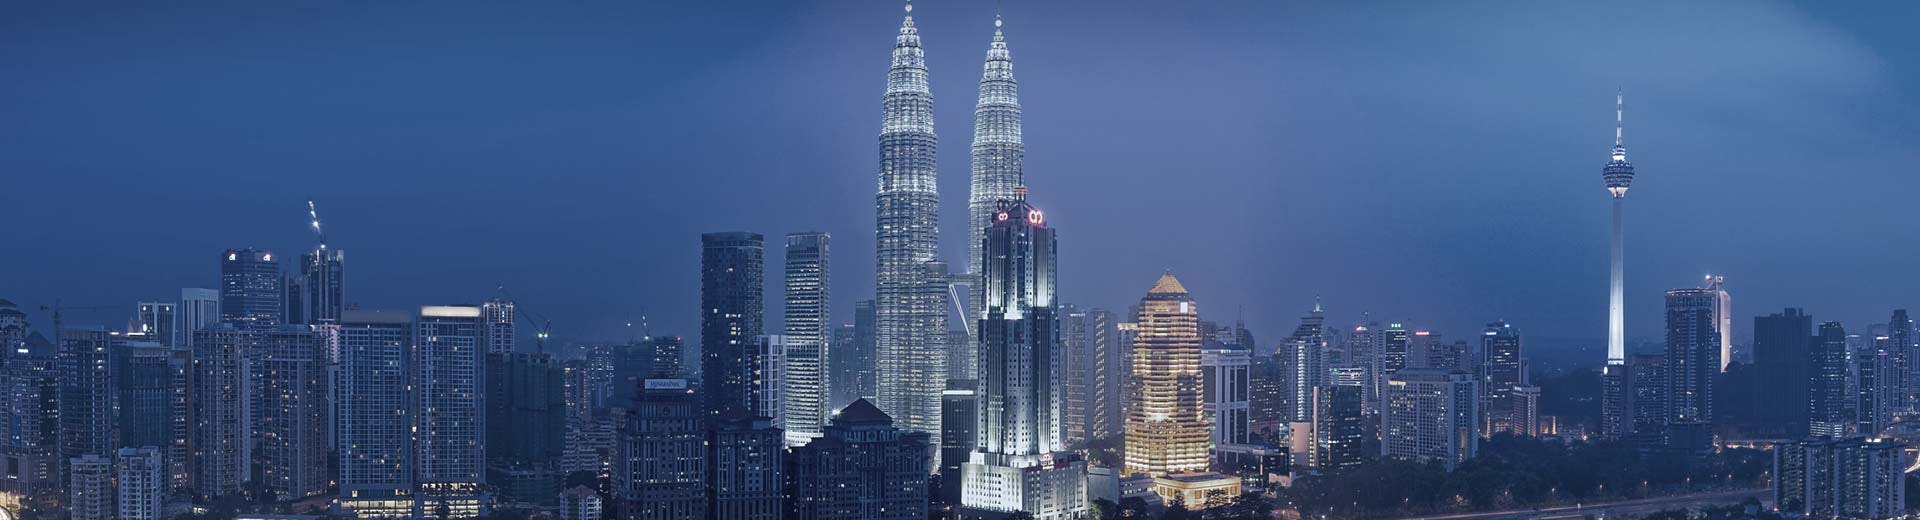 Les tours jumelles imminentes de Kuala Lumpur éclairent le ciel sombre.